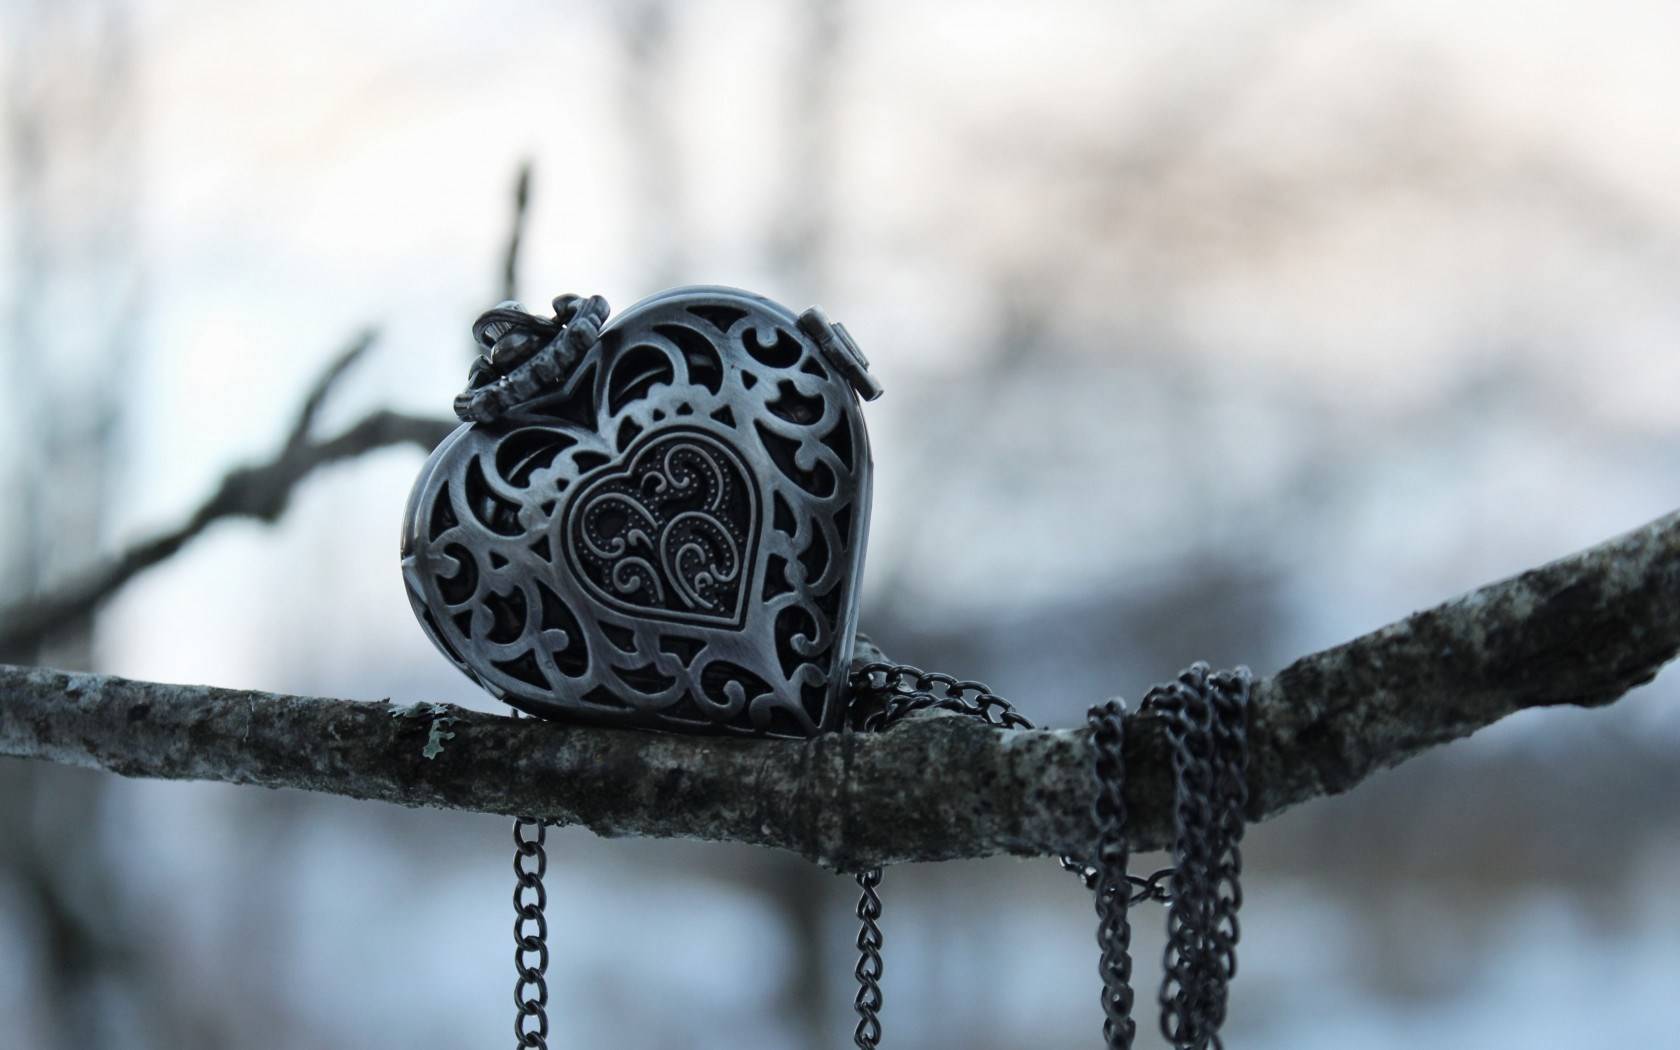 branch-pendant-necklace-heart-shape-jewelry-hd-wallpaper.jpg